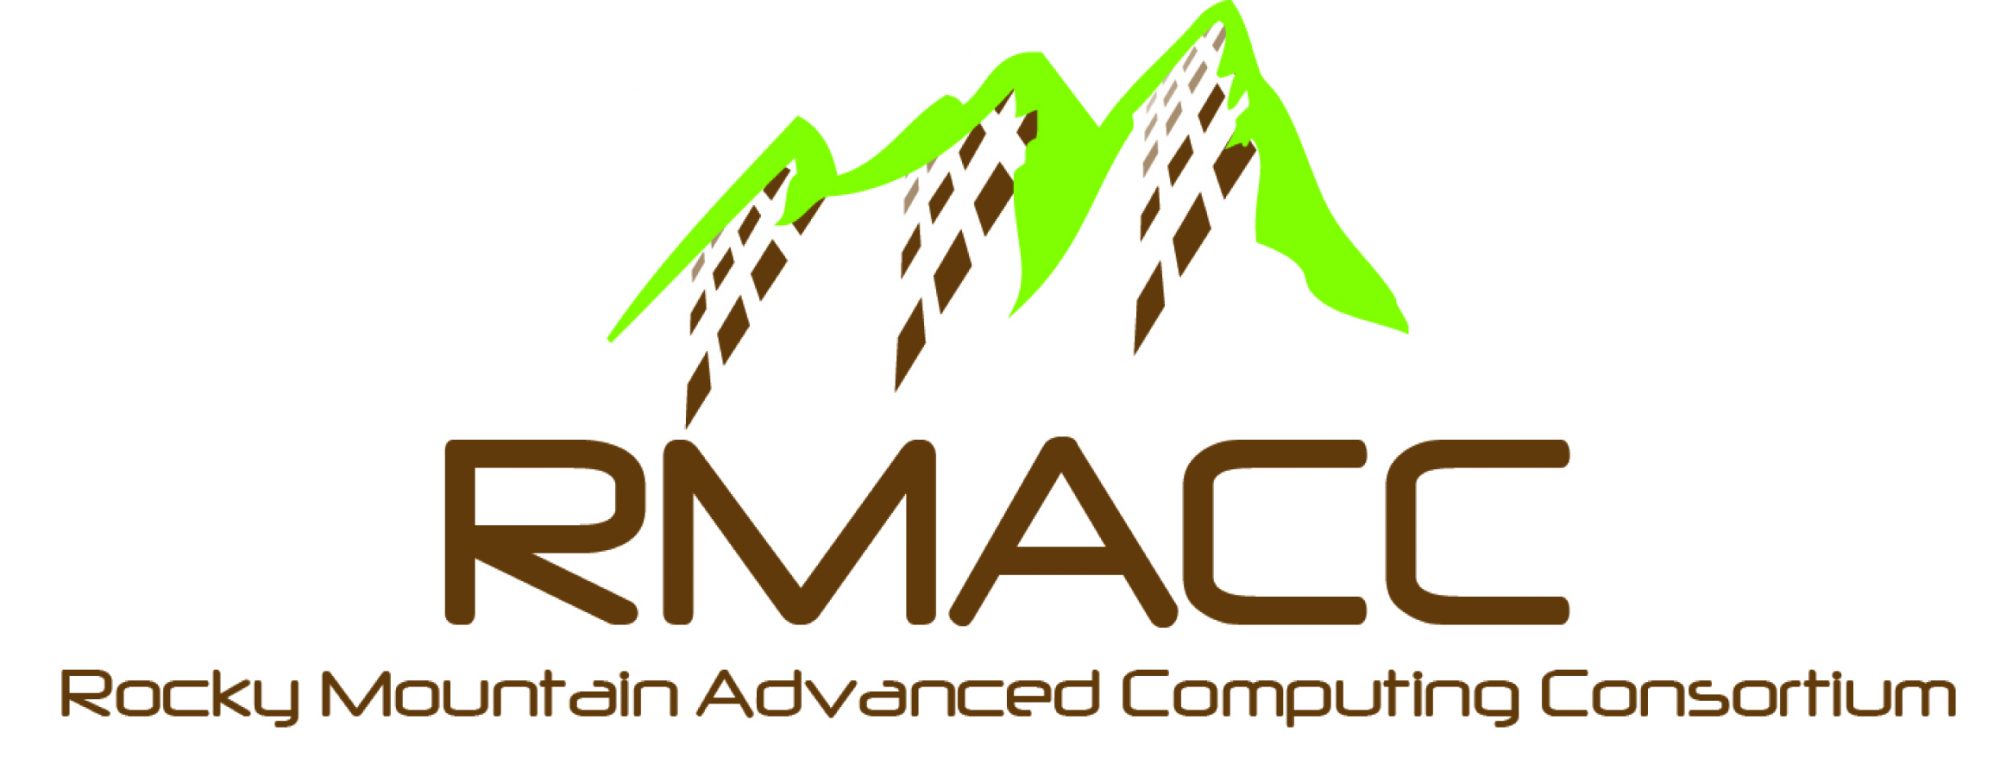 RMACC logo